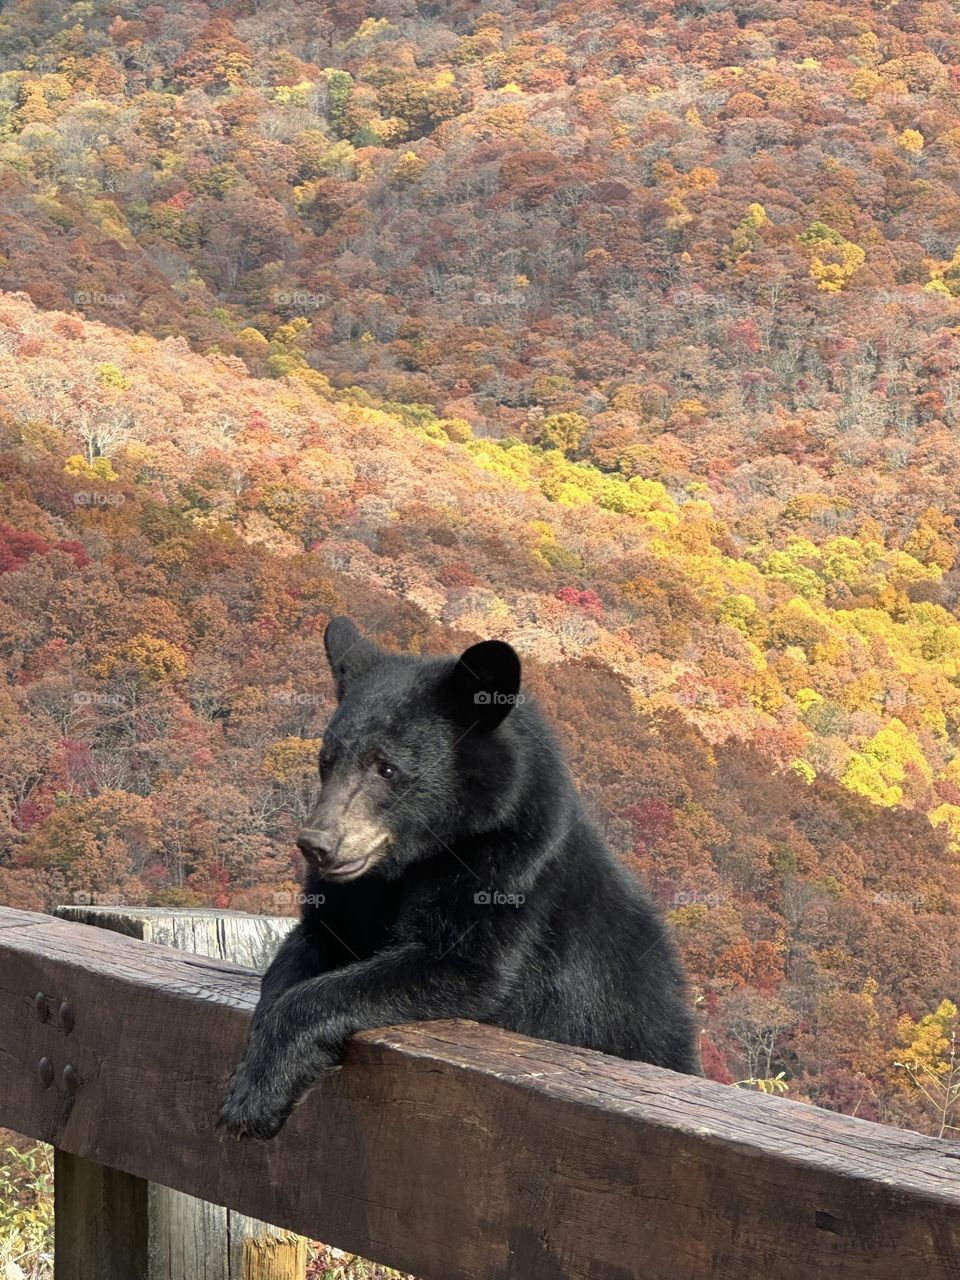 Bear posing